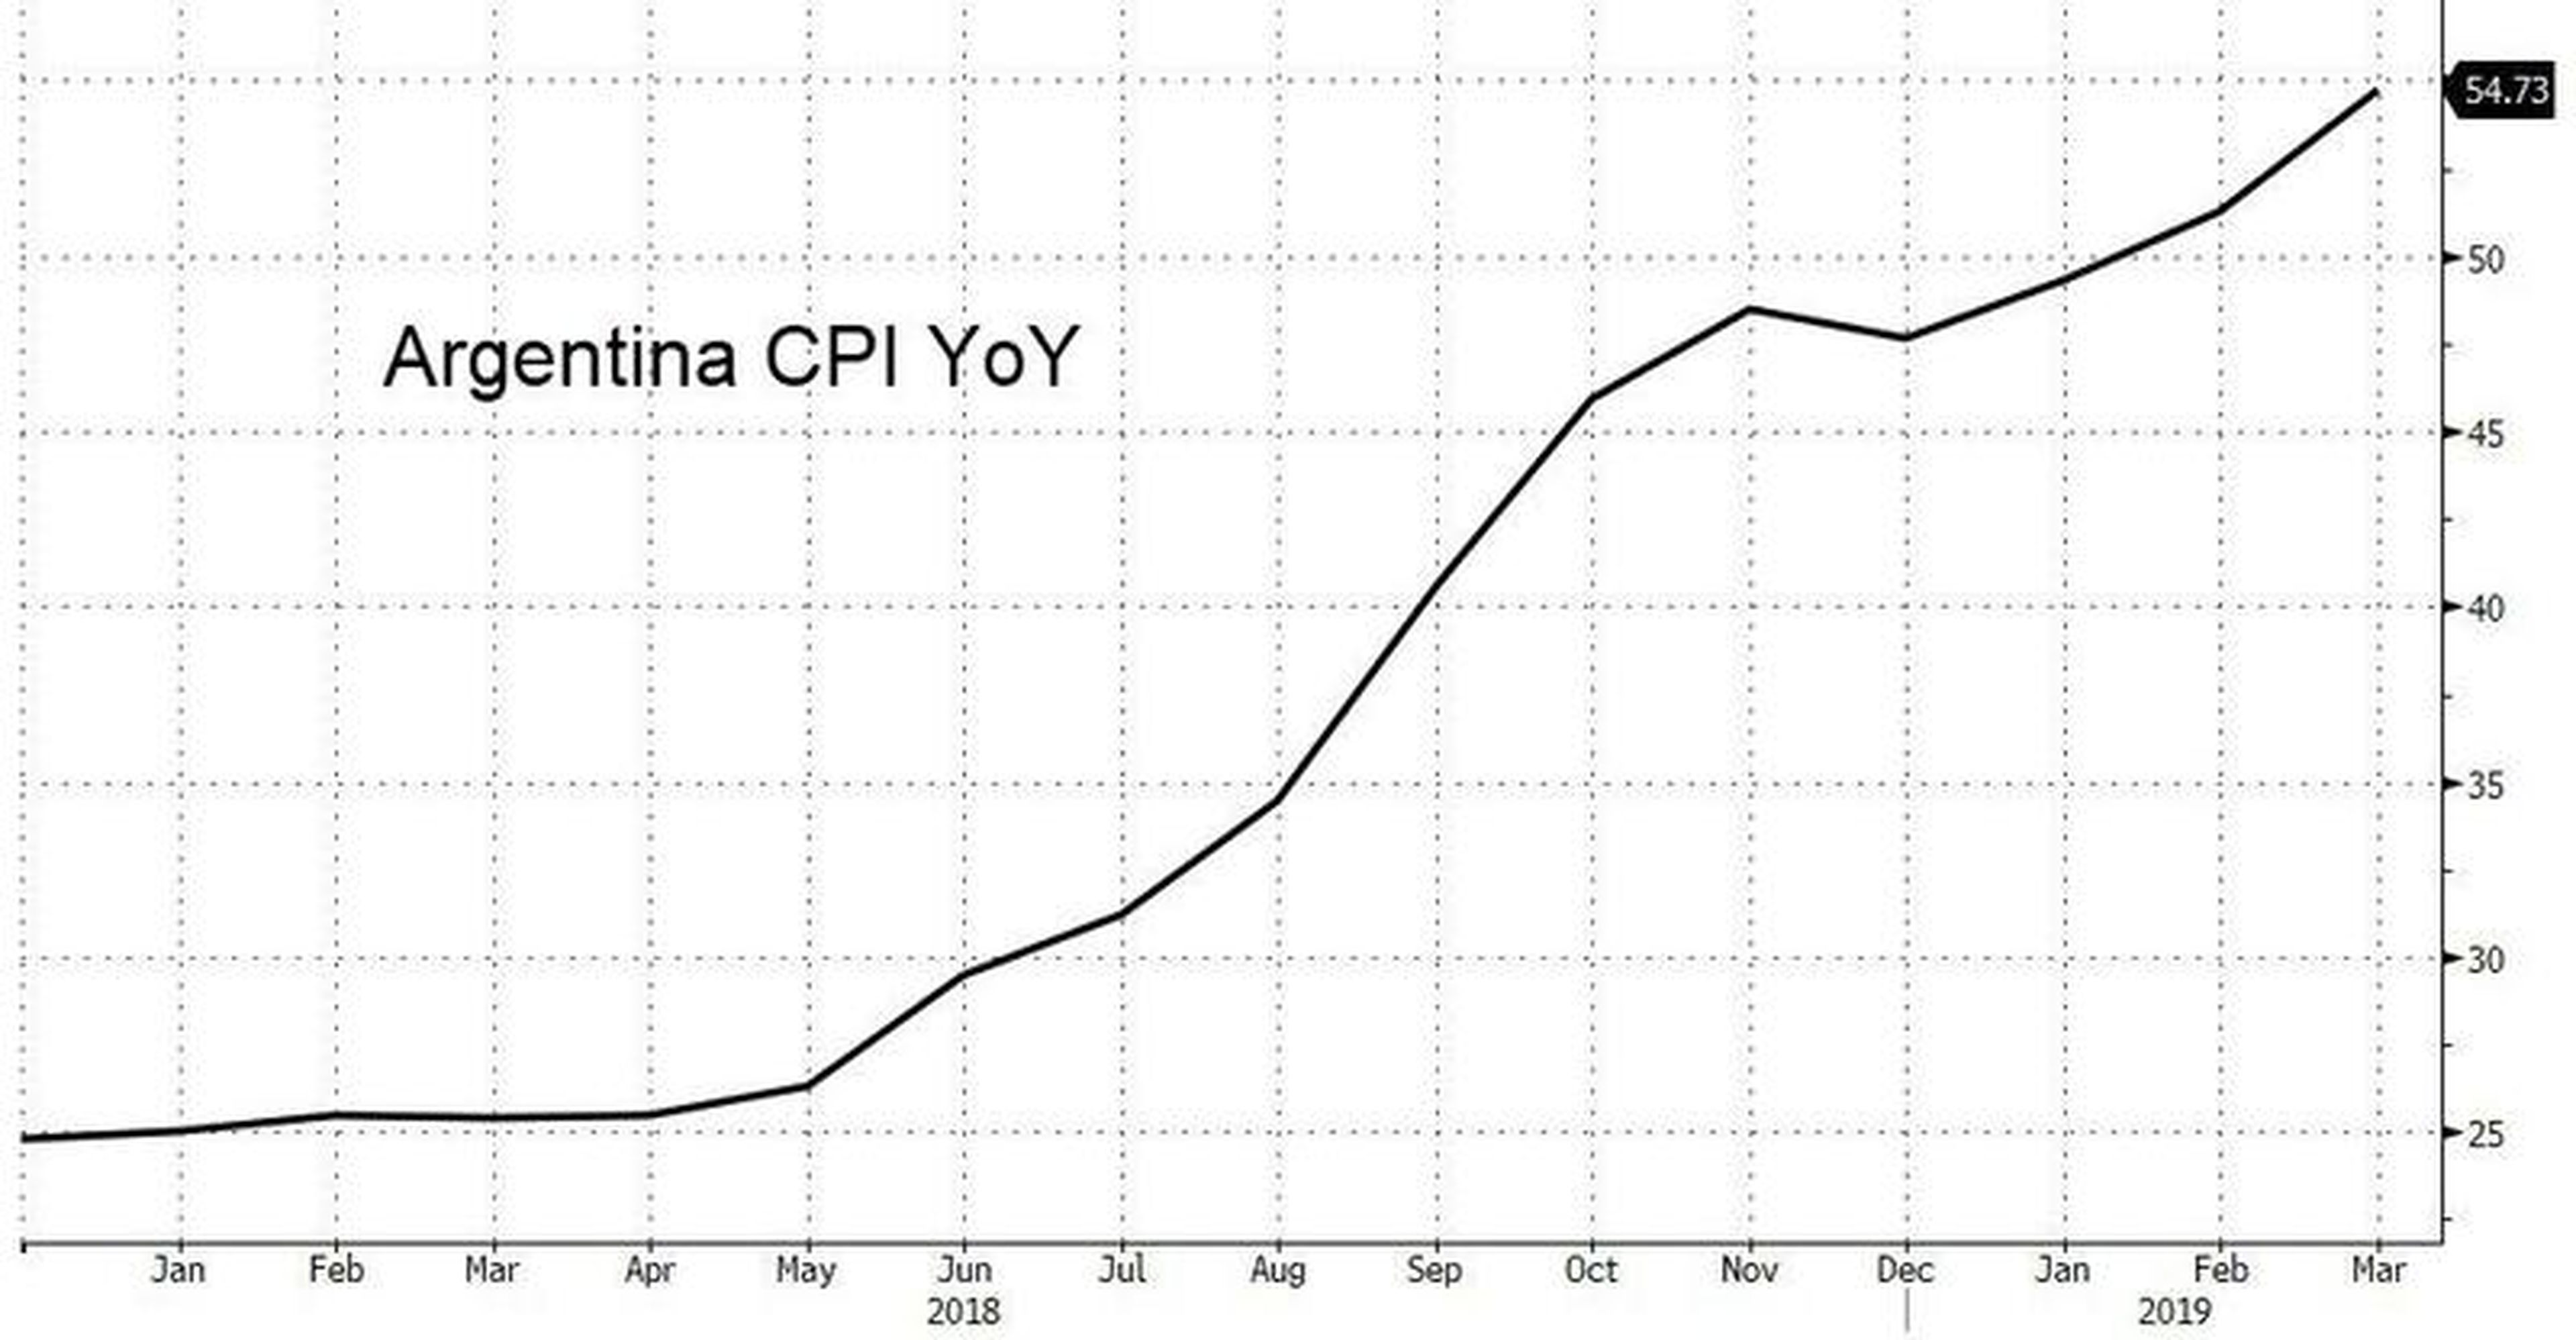 Evolución de la inflación en Argentina